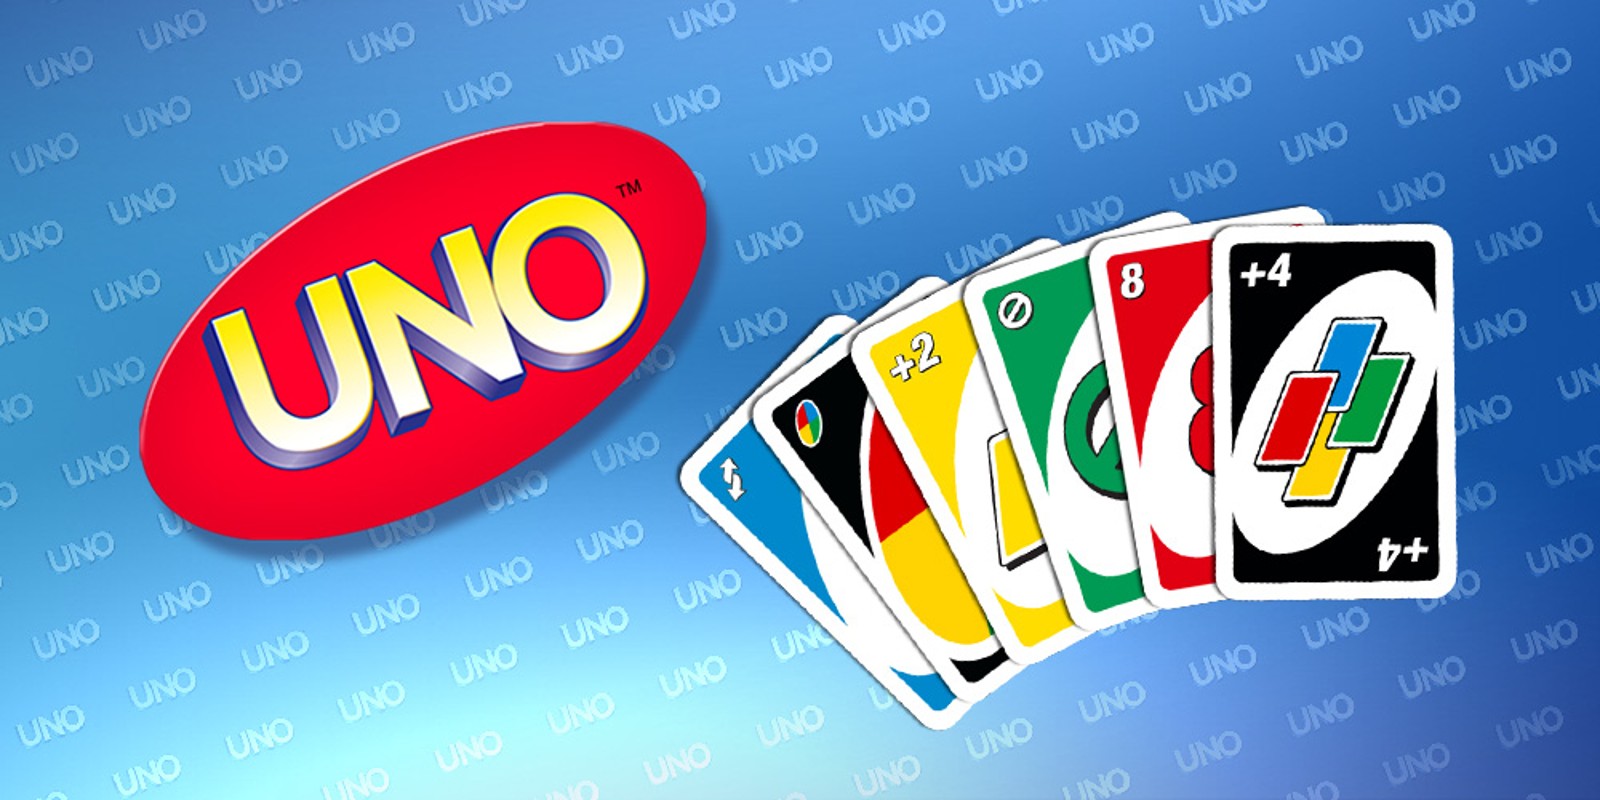 Jogar Uno  Jogo Uno Online no